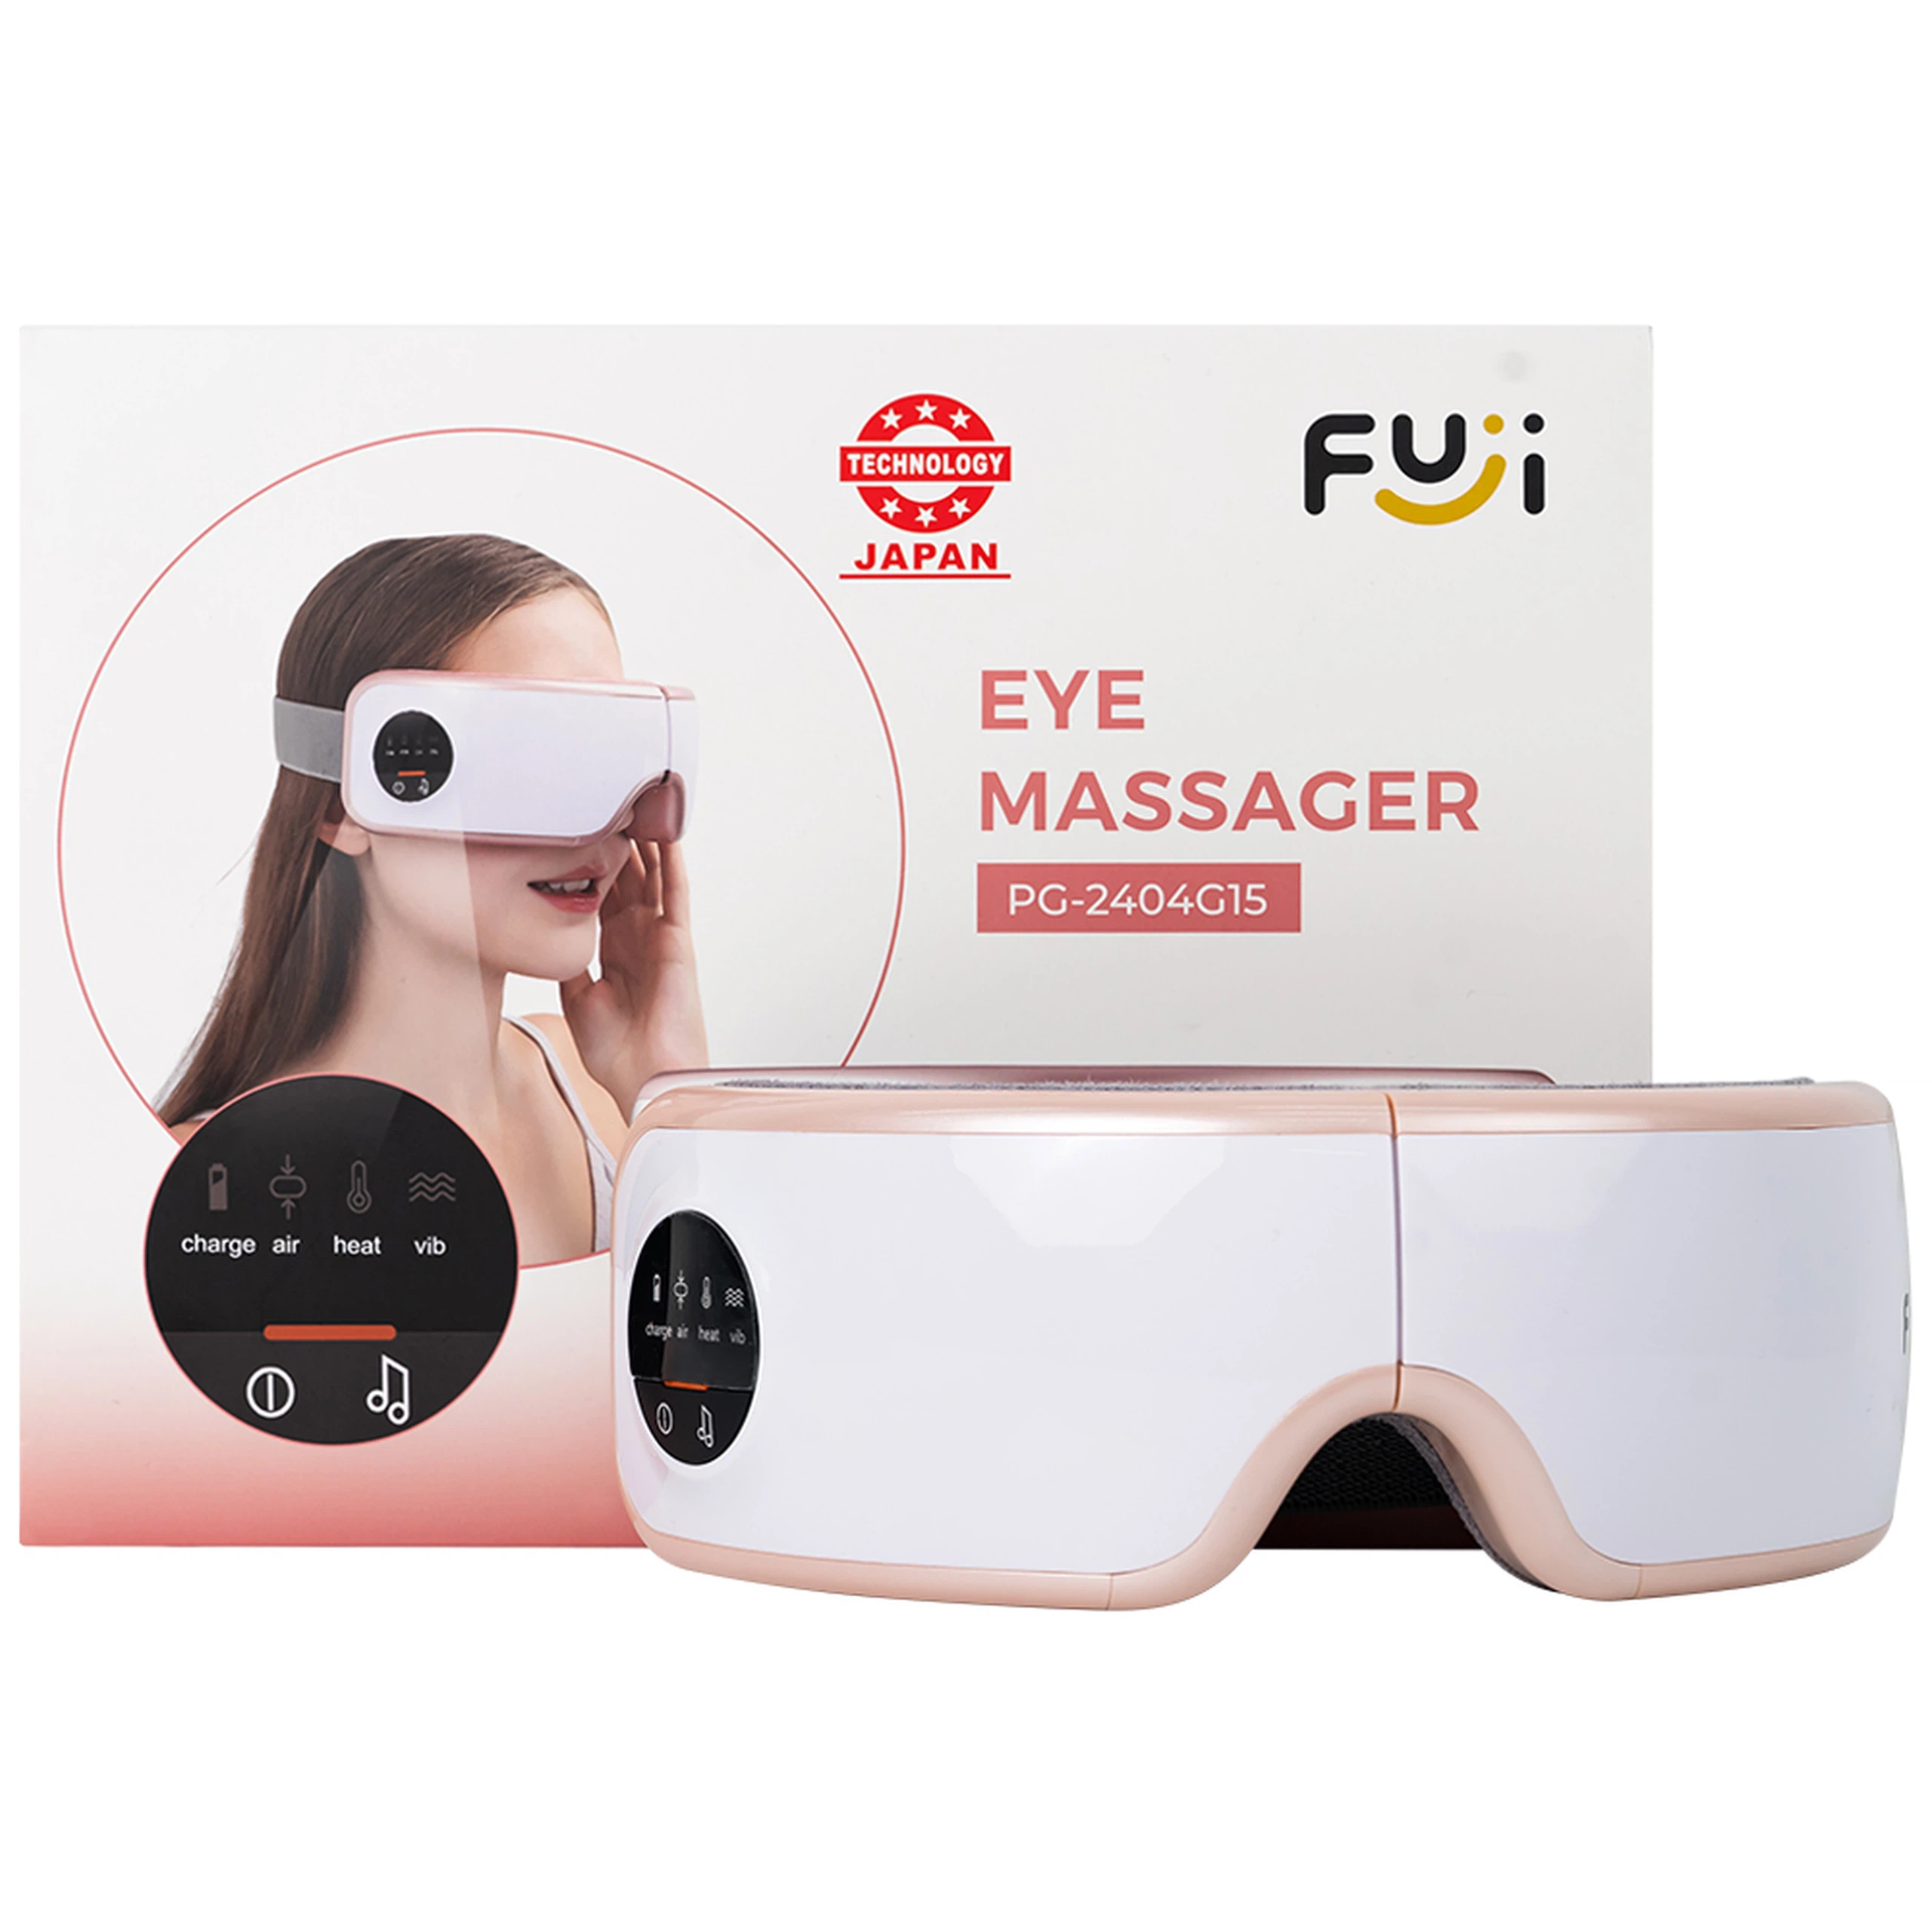 Máy mát xa mắt Fuji PG-2404G15 giúp massage thái dương và các huyệt đạo khác ở vùng mắt